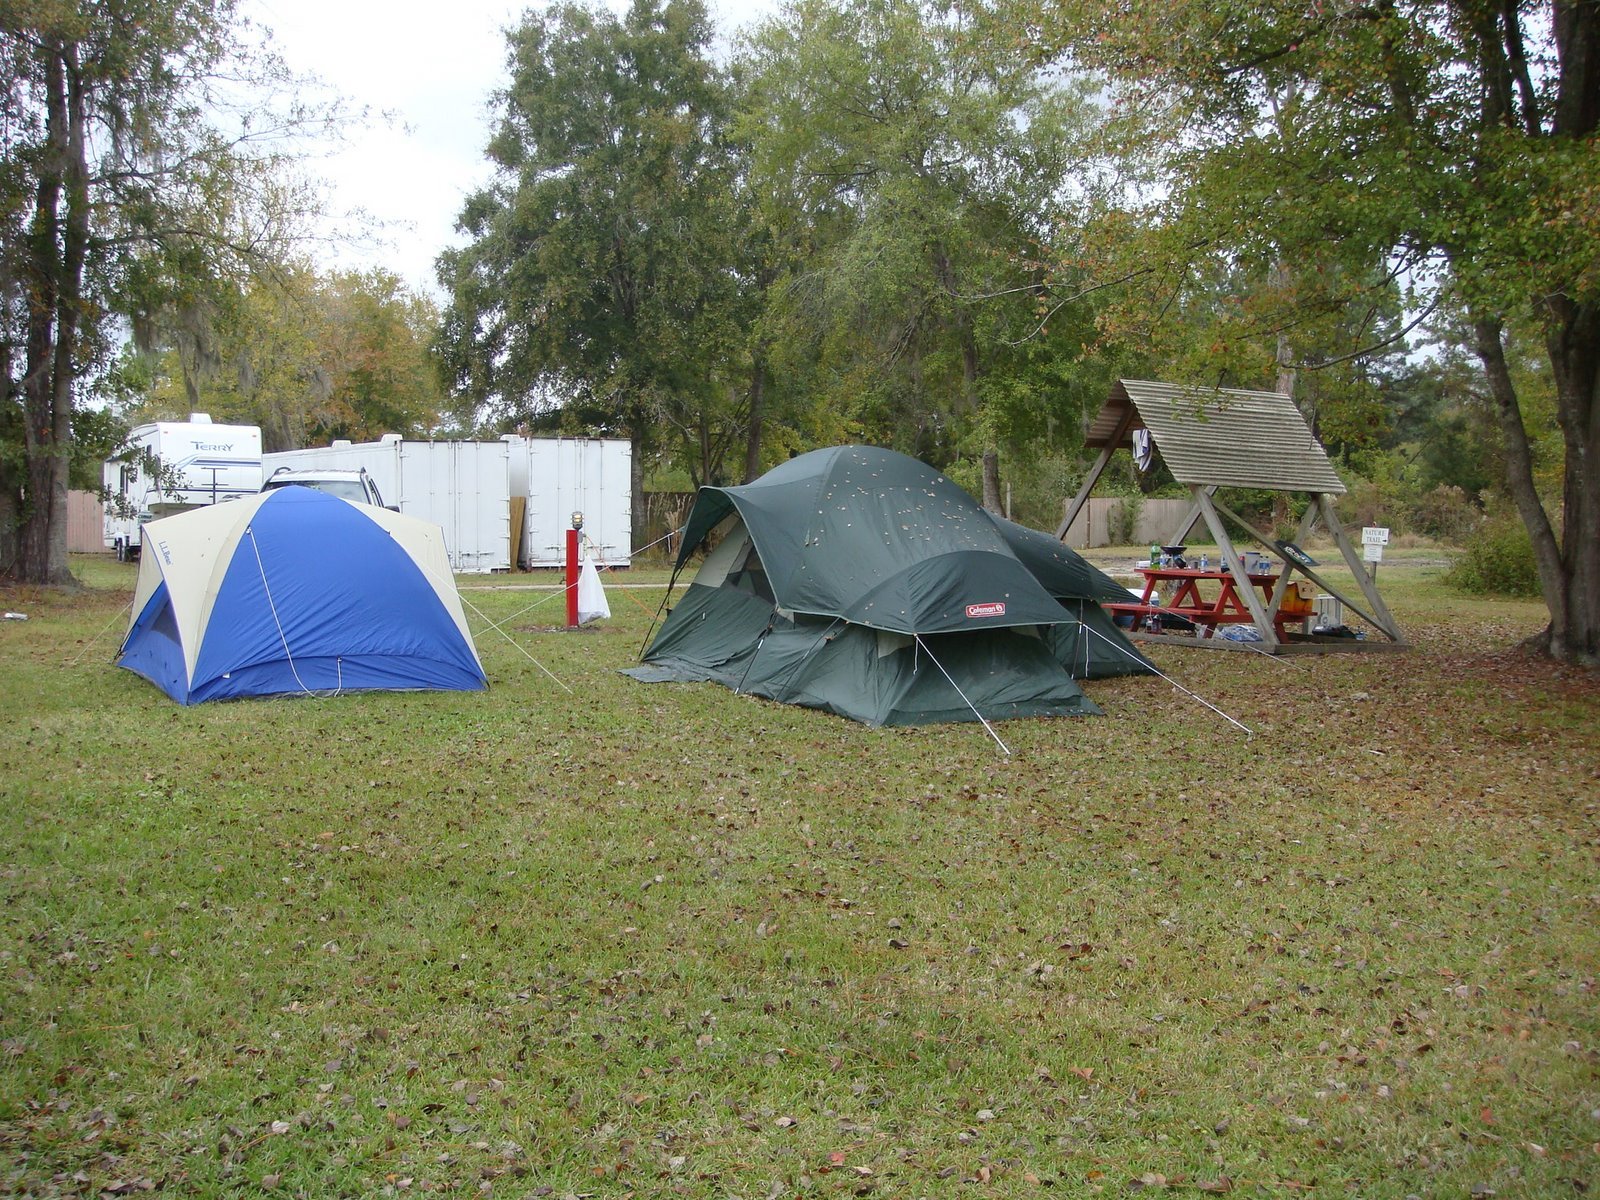 Camping!